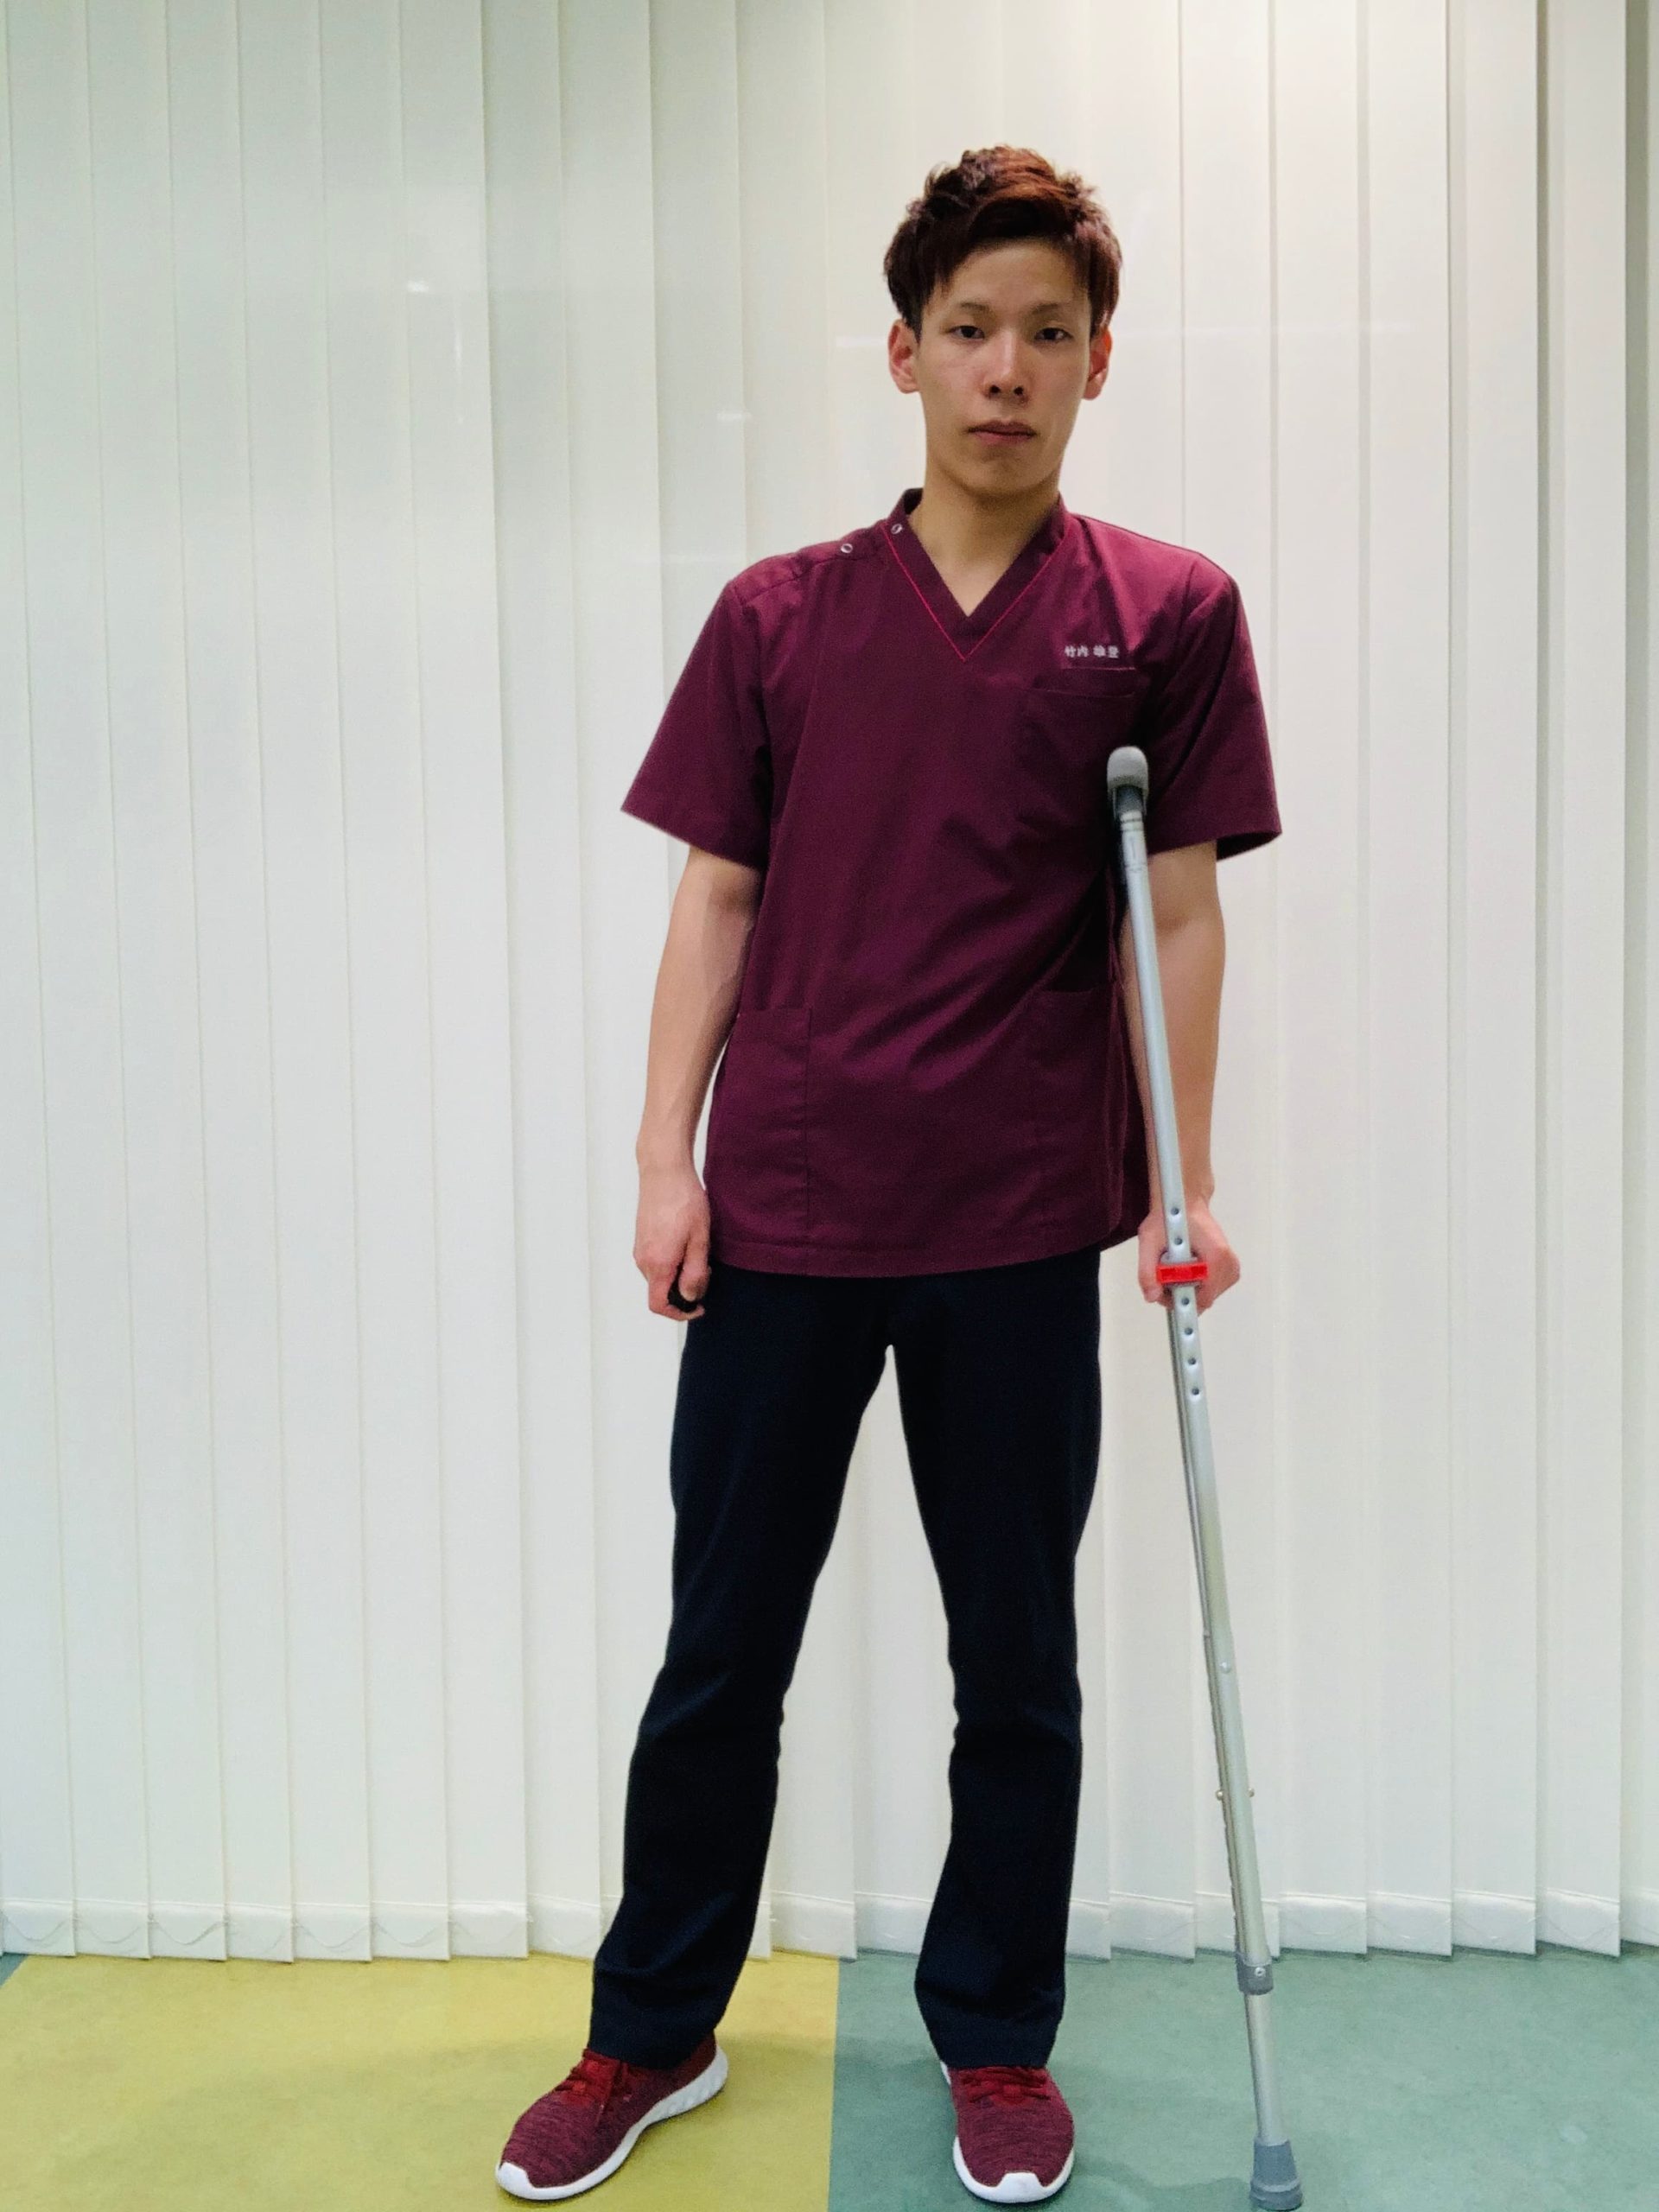 松葉杖歩行の使用方法と注意点 - 足立慶友整形外科